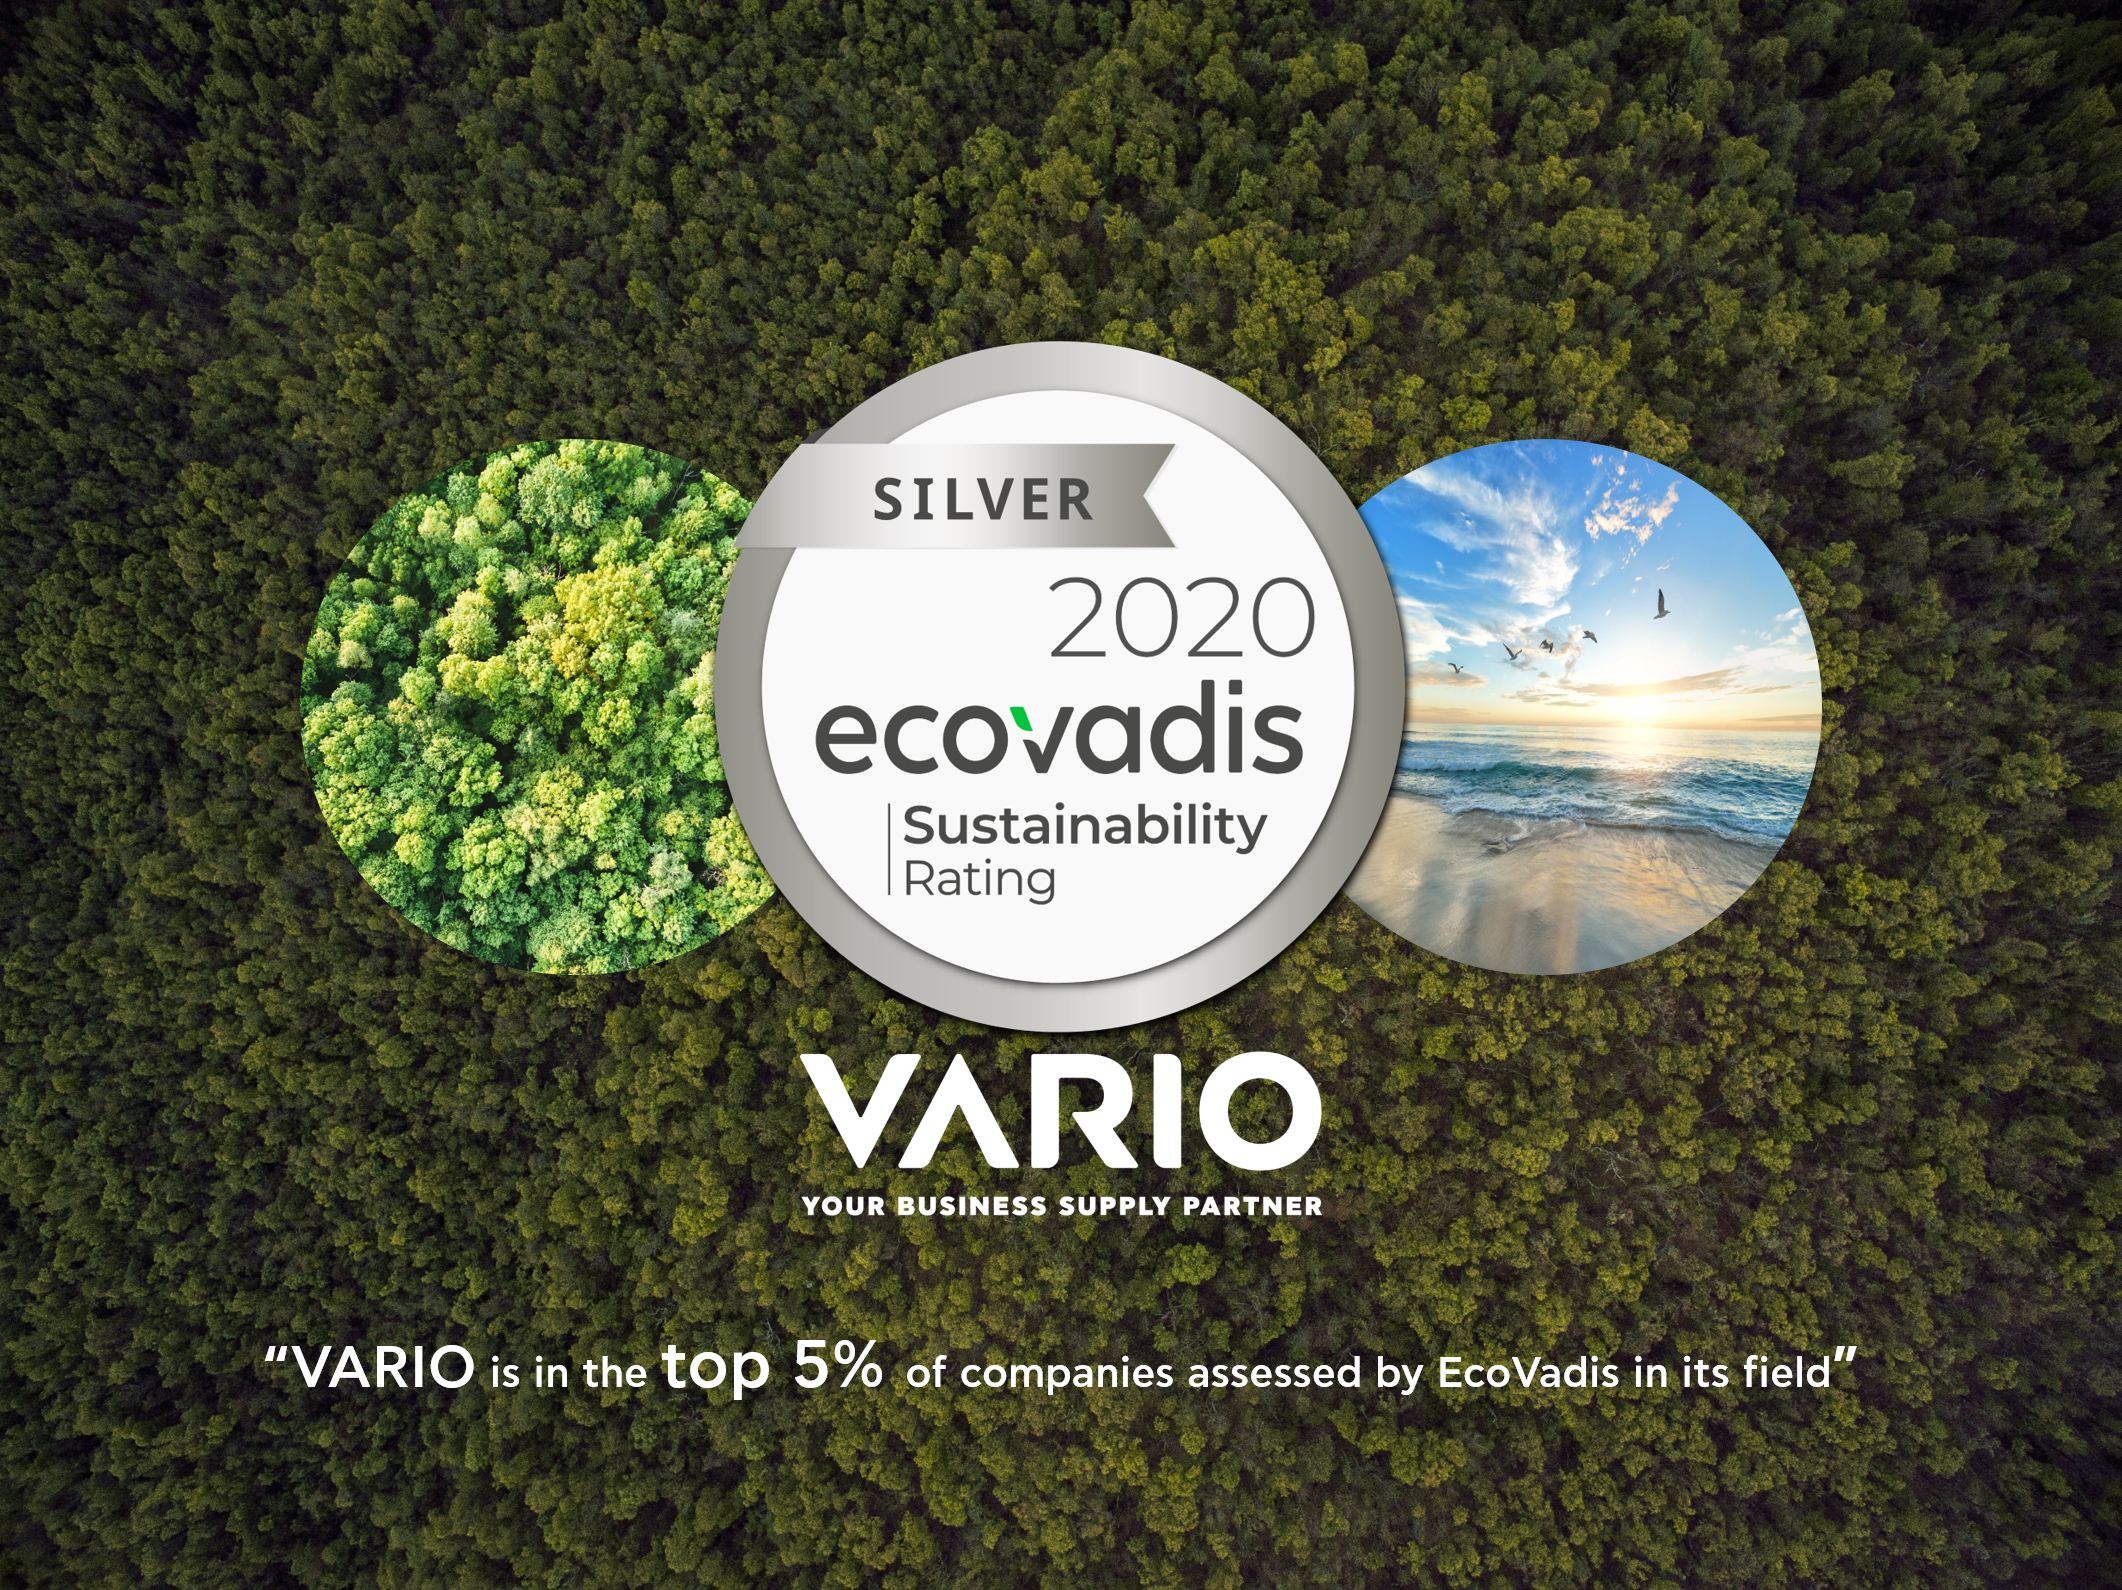 Η VARIO διακρίθηκε με το Silver Award από την EcoVadis για τις κοινωνικές πρακτικές της σχετικά με θέματα αειφορίας και βιώσιμης ανάπτυξης.